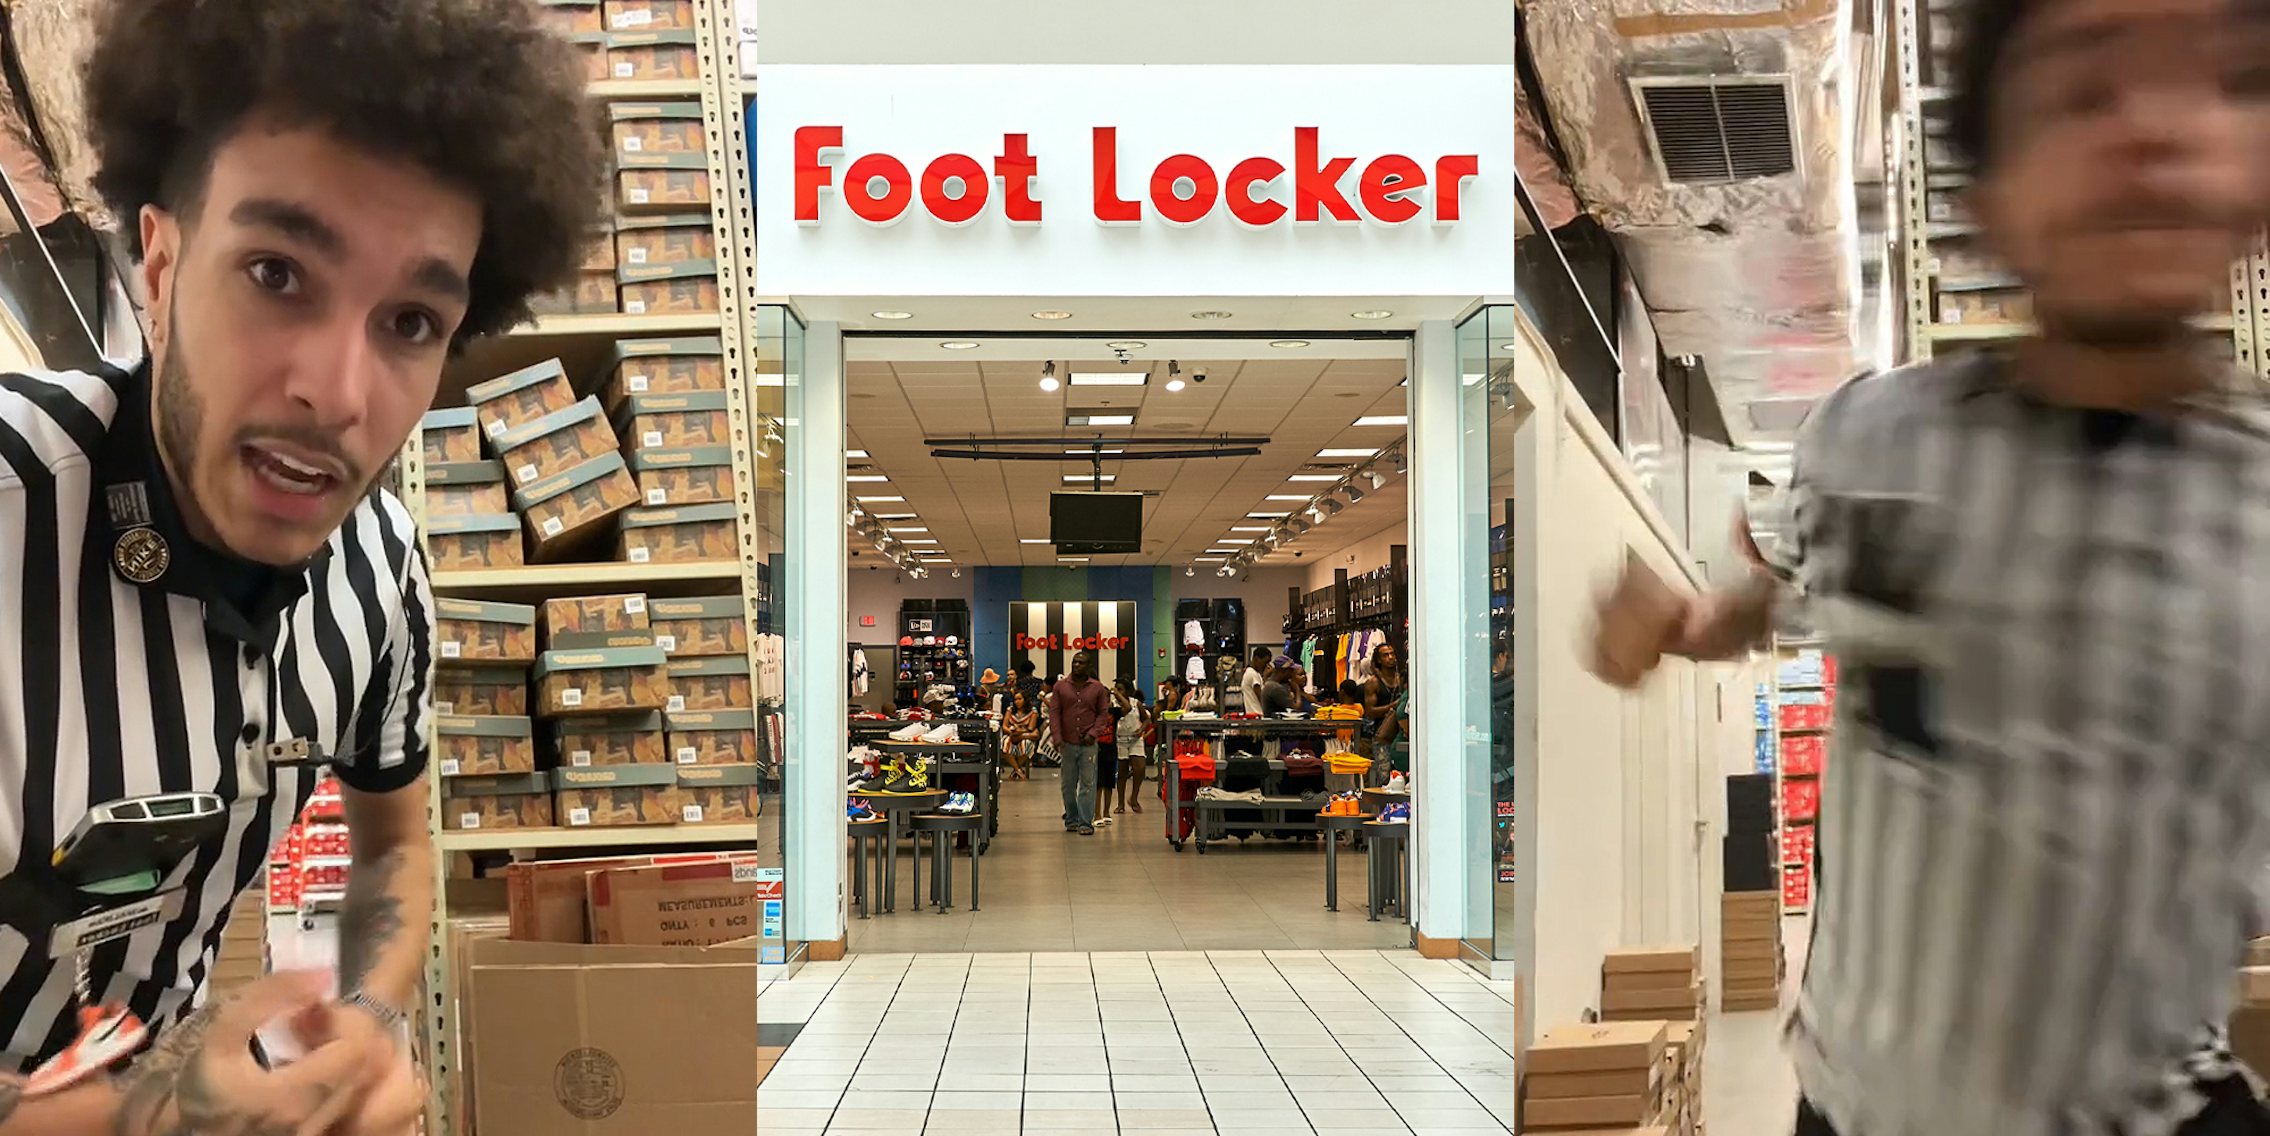 Foot Locker employees be like: 